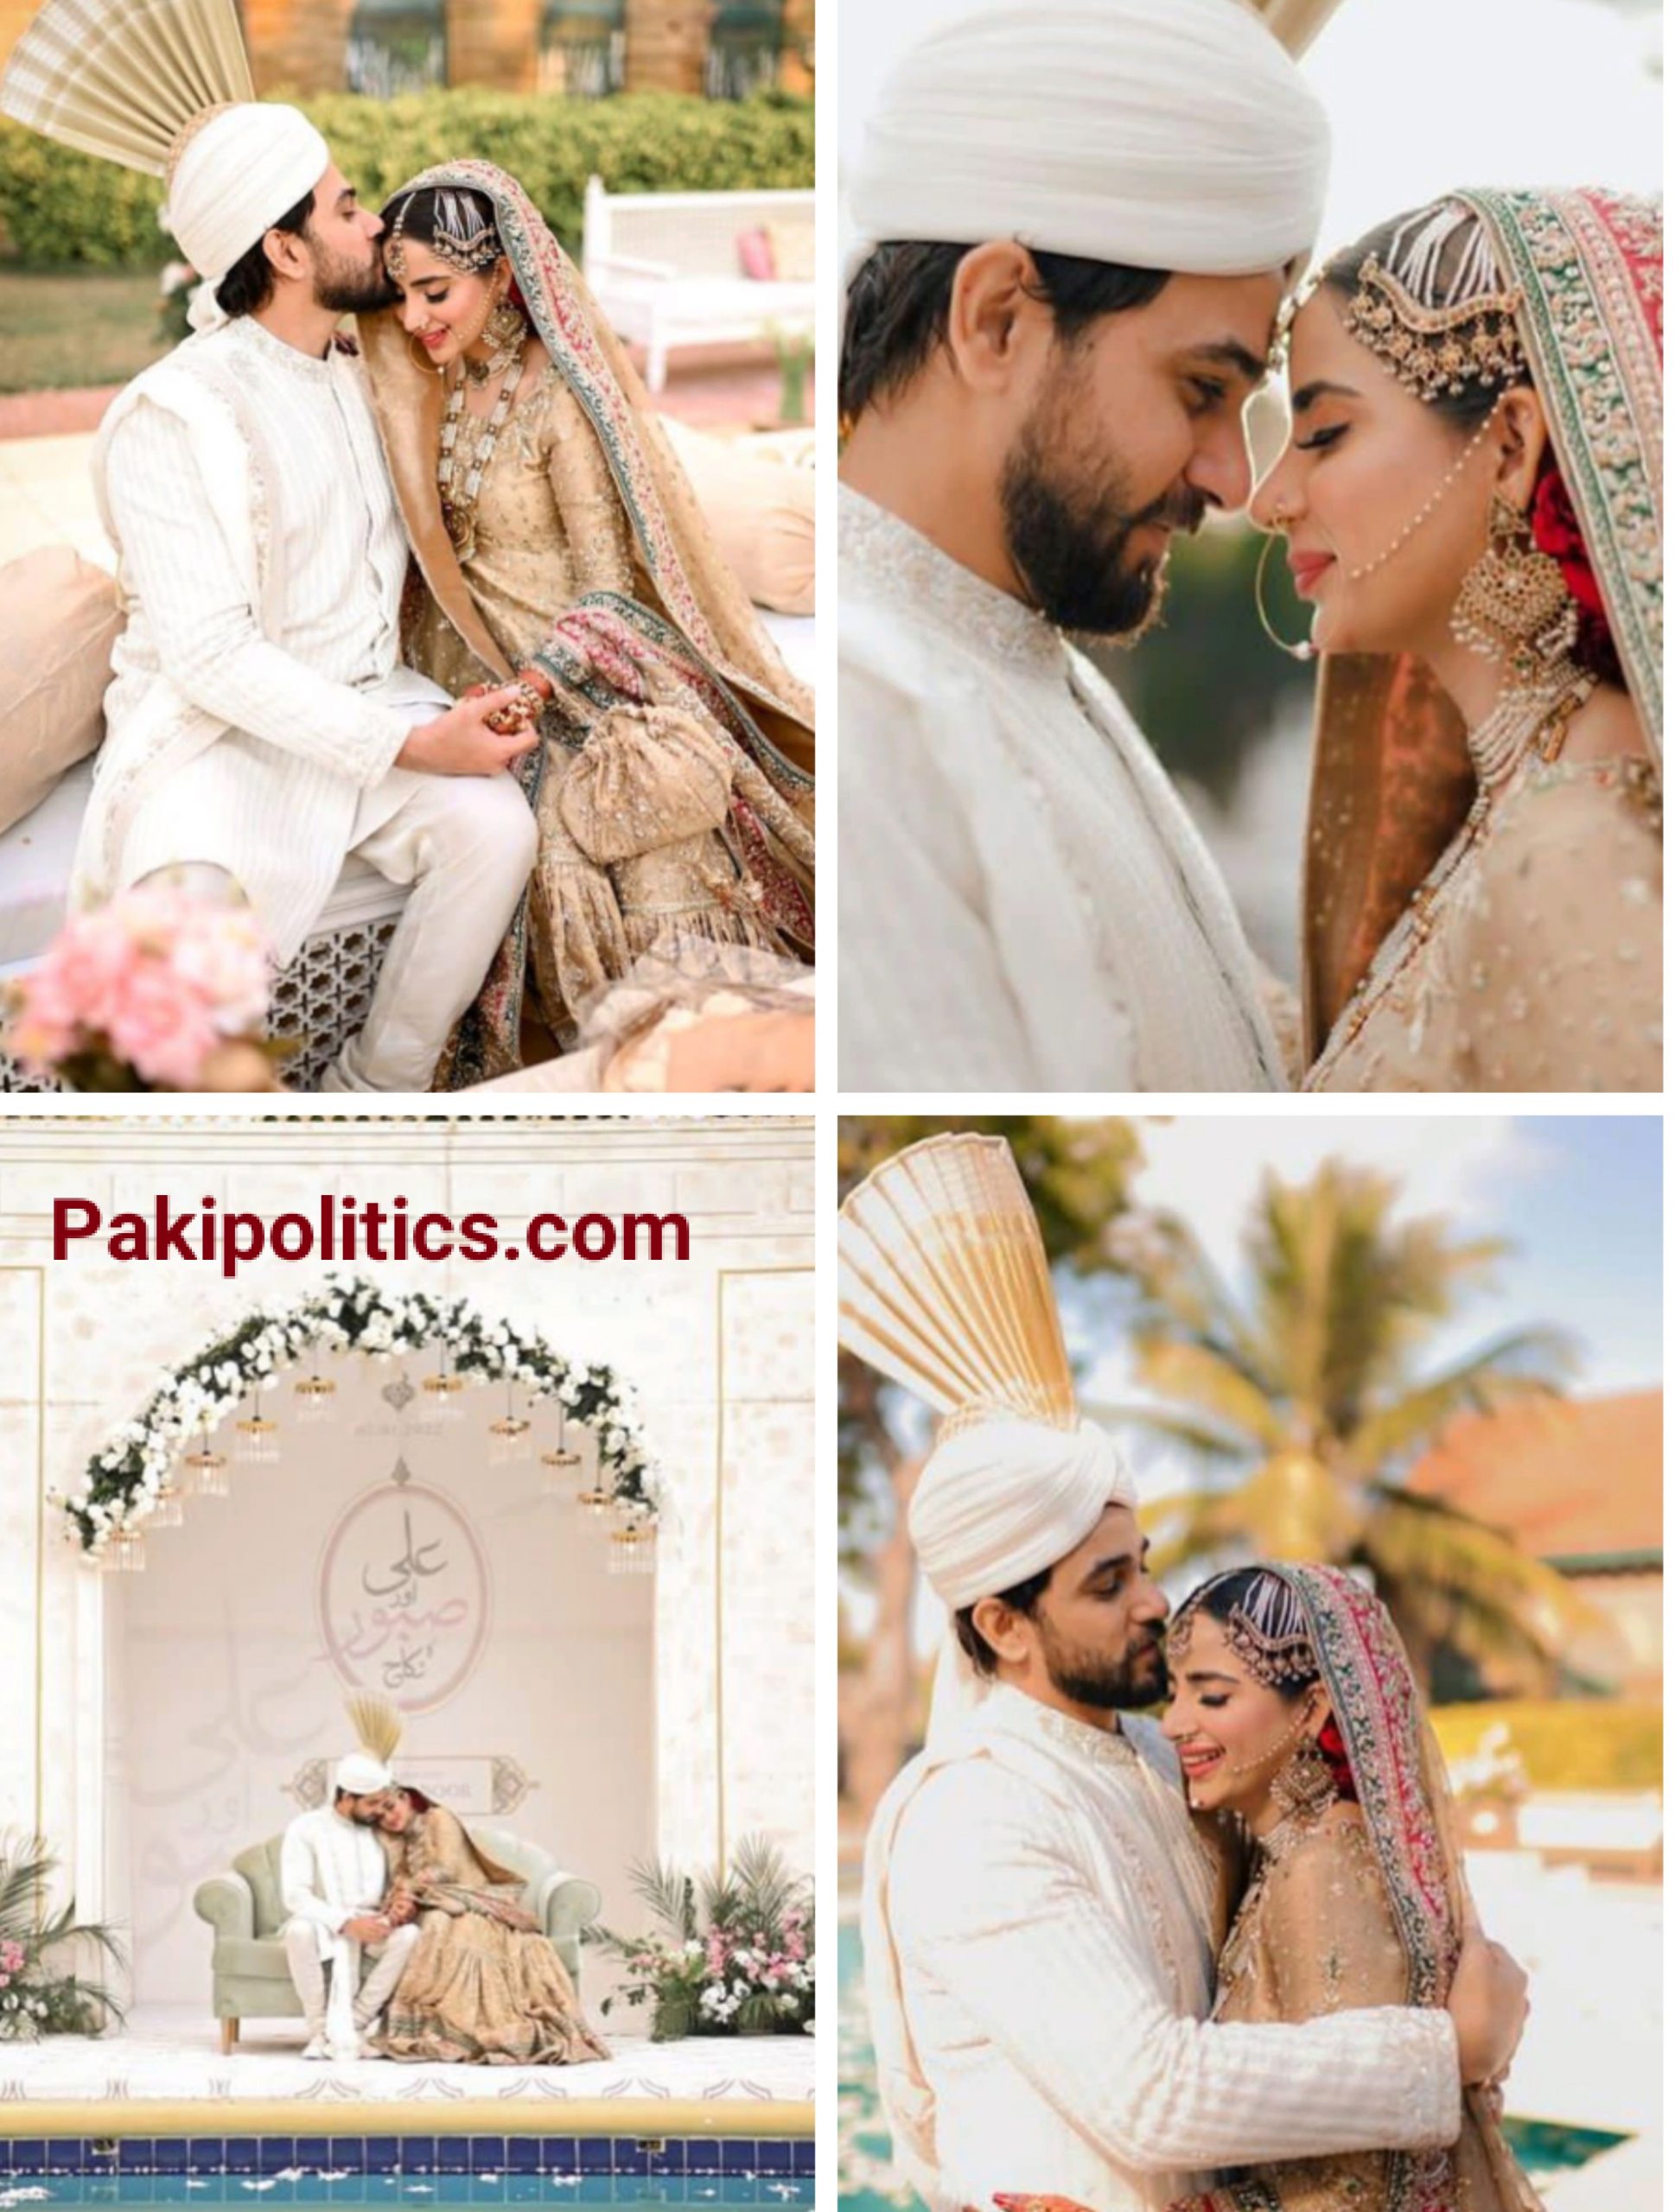 She got married to actor Saboor Ali Ansari.